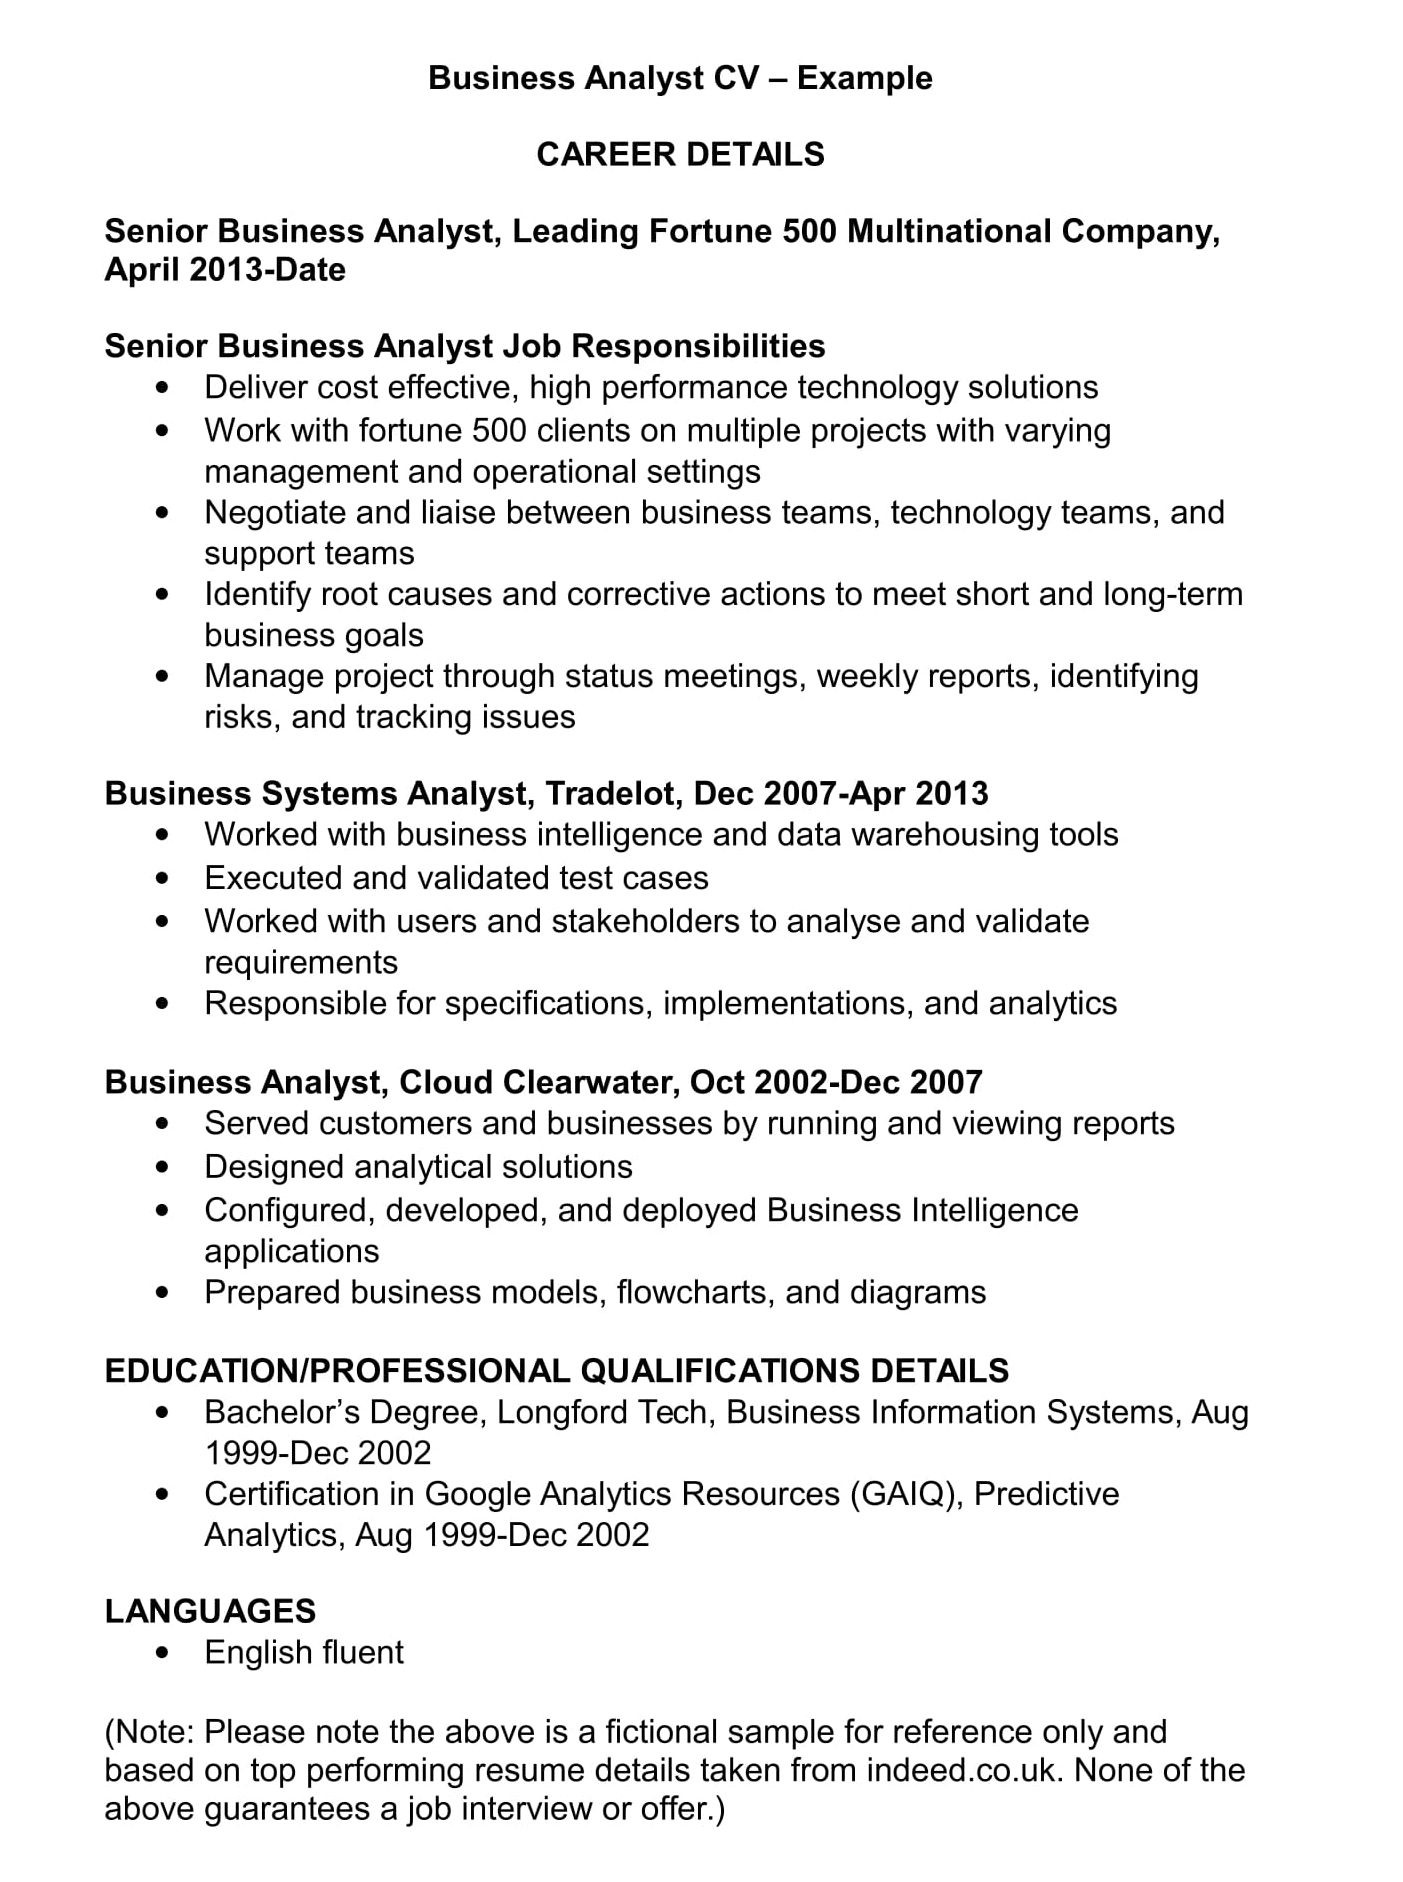 Sample Resume for Senior Business Analyst Business Analyst Lebenslauf Vorlage Und Beispiele Renaix.com